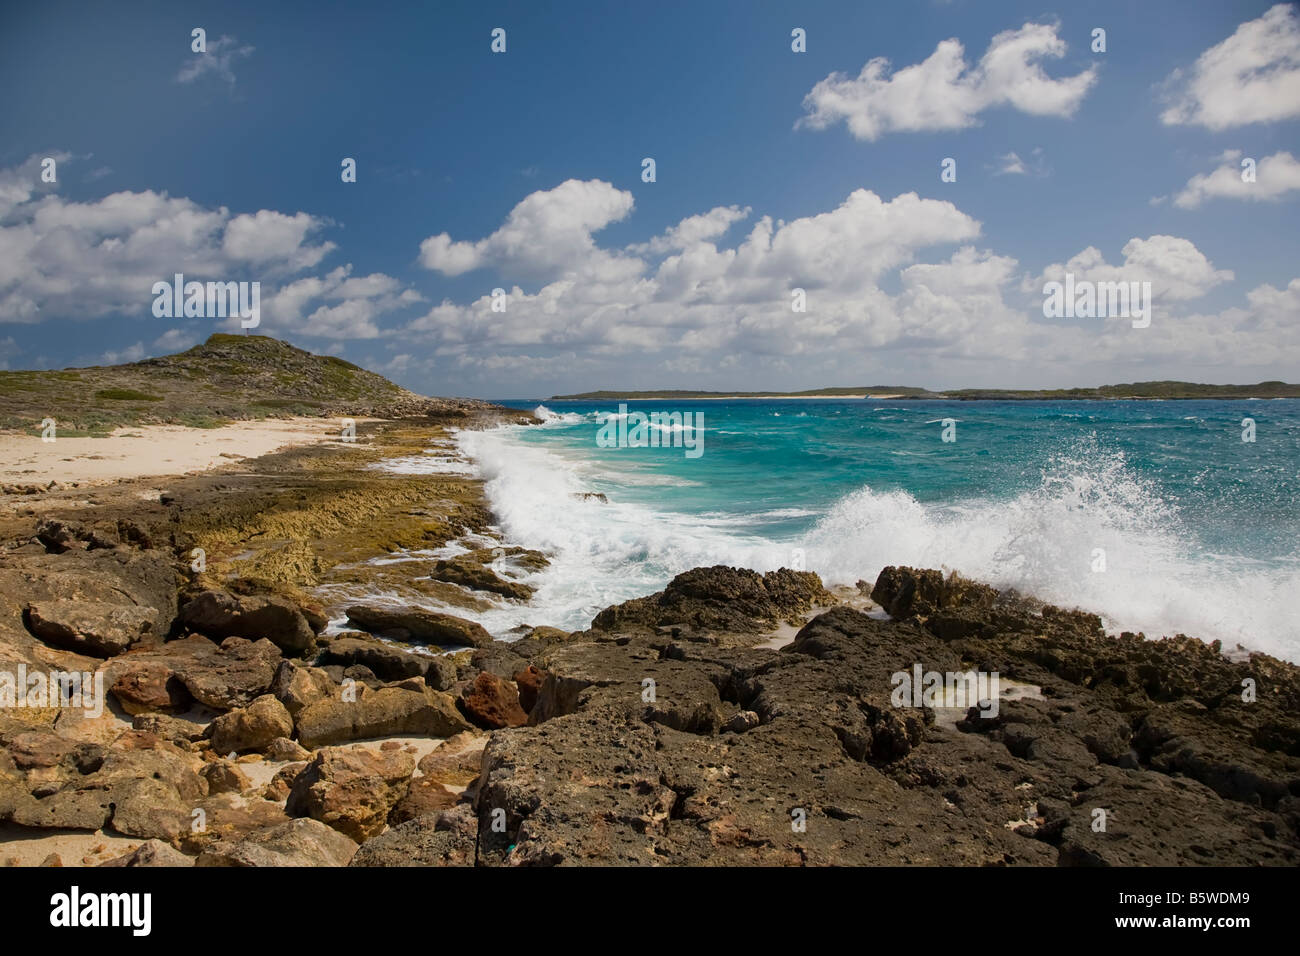 Áspera costa rocosa en el extremo oriental de la isla caribeña de Anguila en el British West Indies Foto de stock